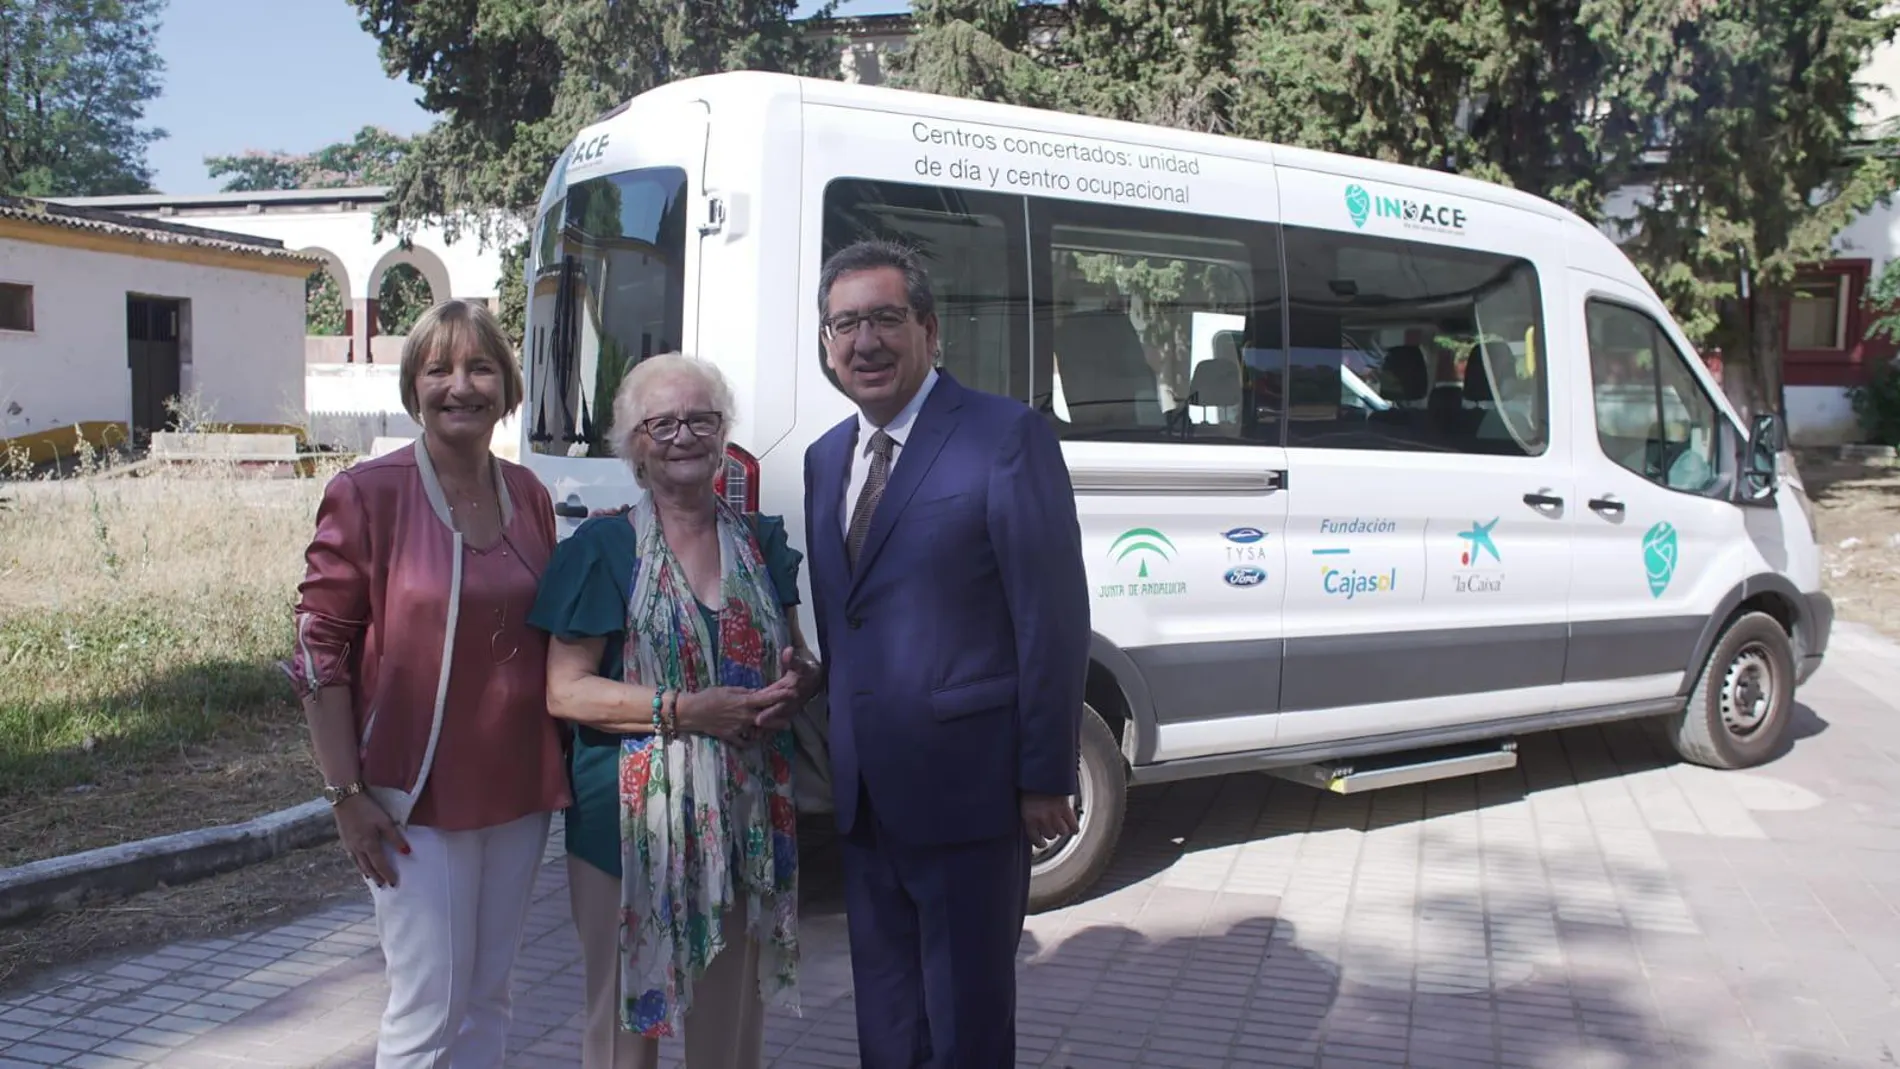 Fundación Cajasol y “La Caixa” presentan un vehículo adaptado para personas con DCA